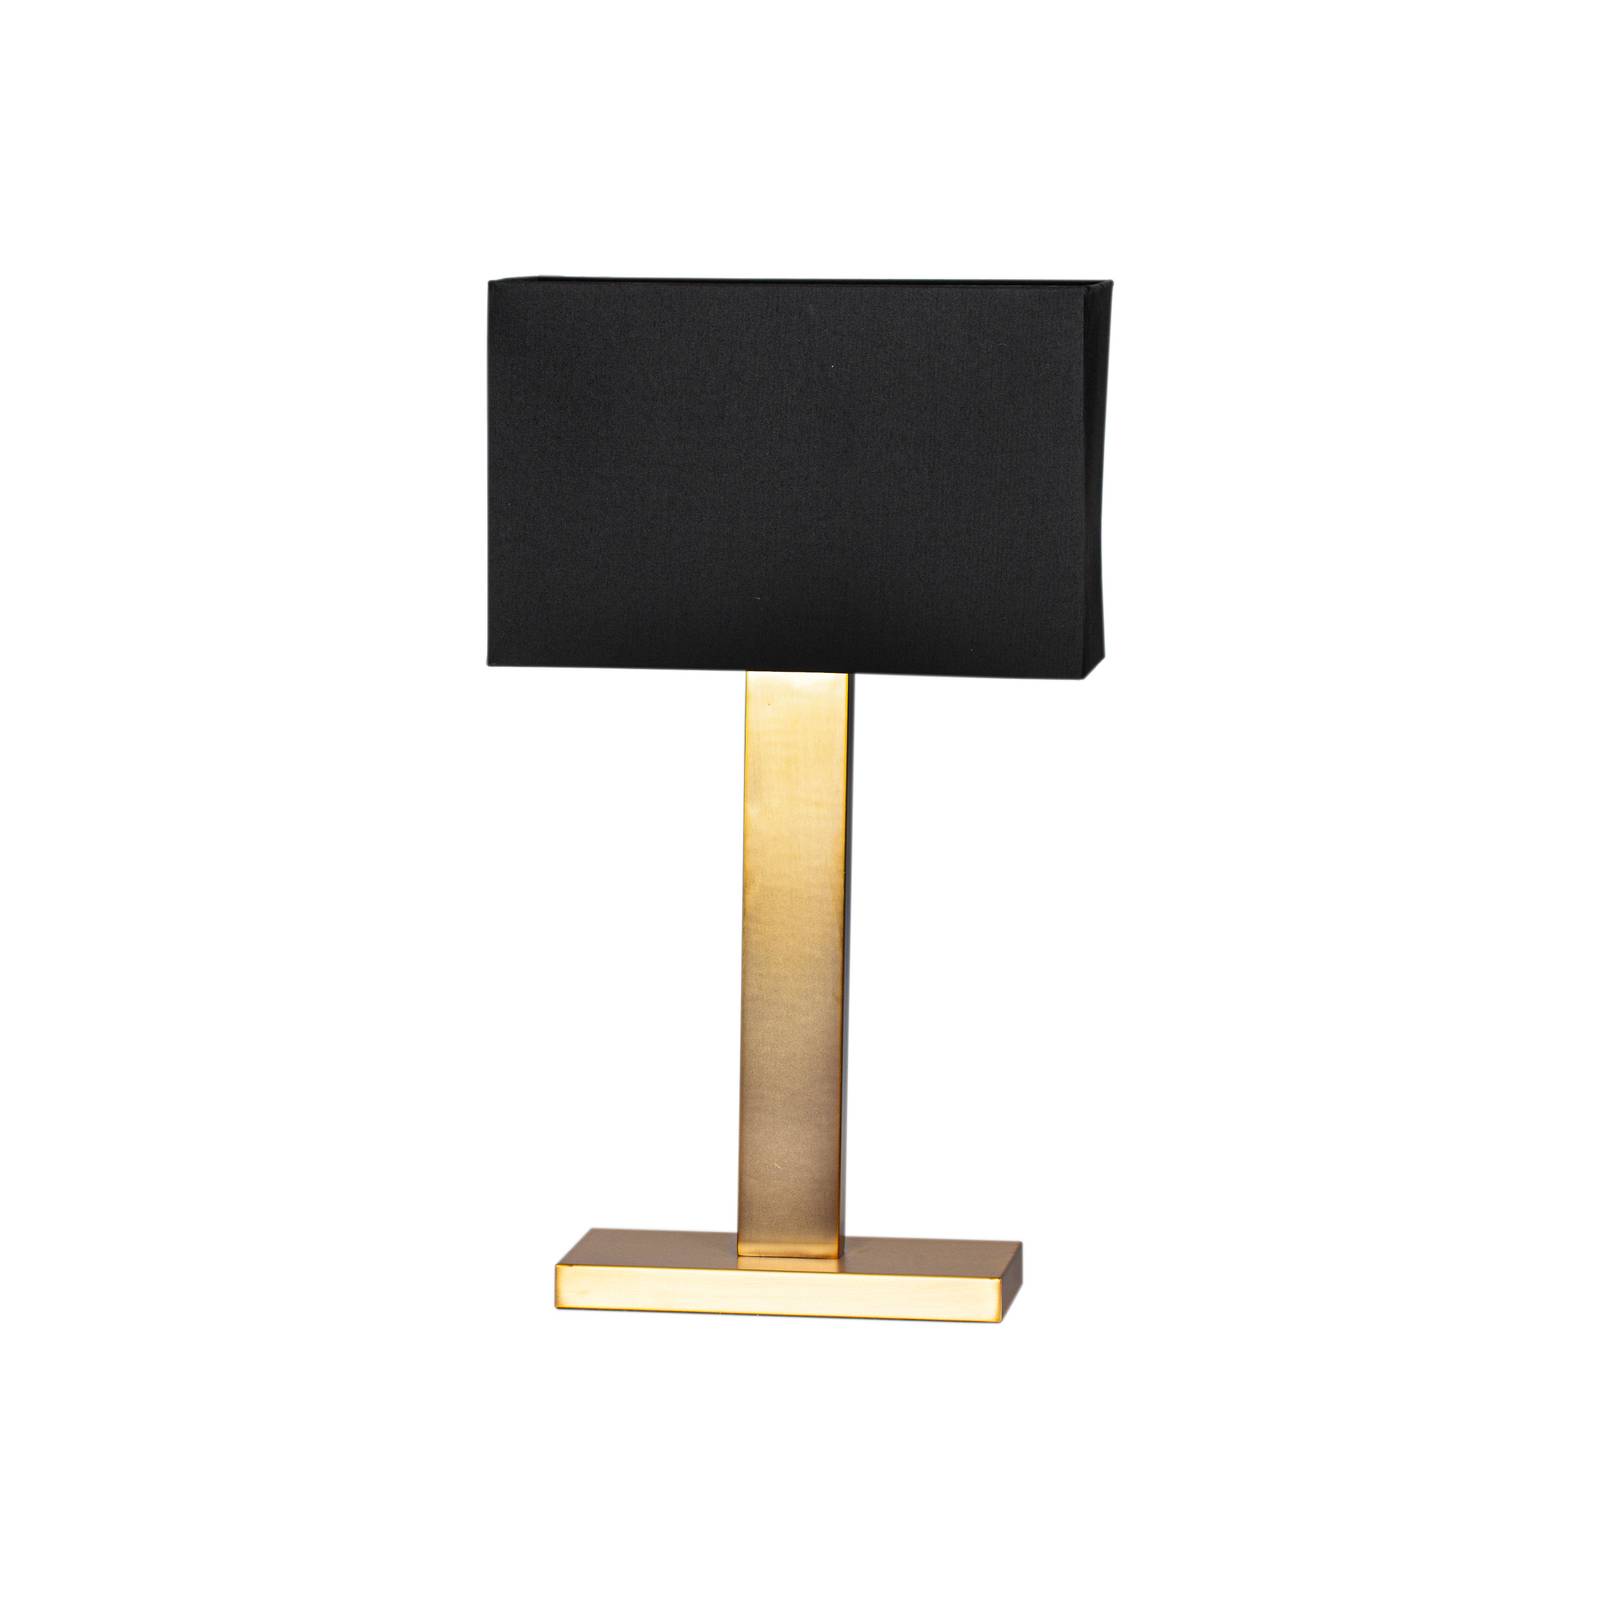 By Rydéns Prime bordlampe høyde 69 cm gull/svart